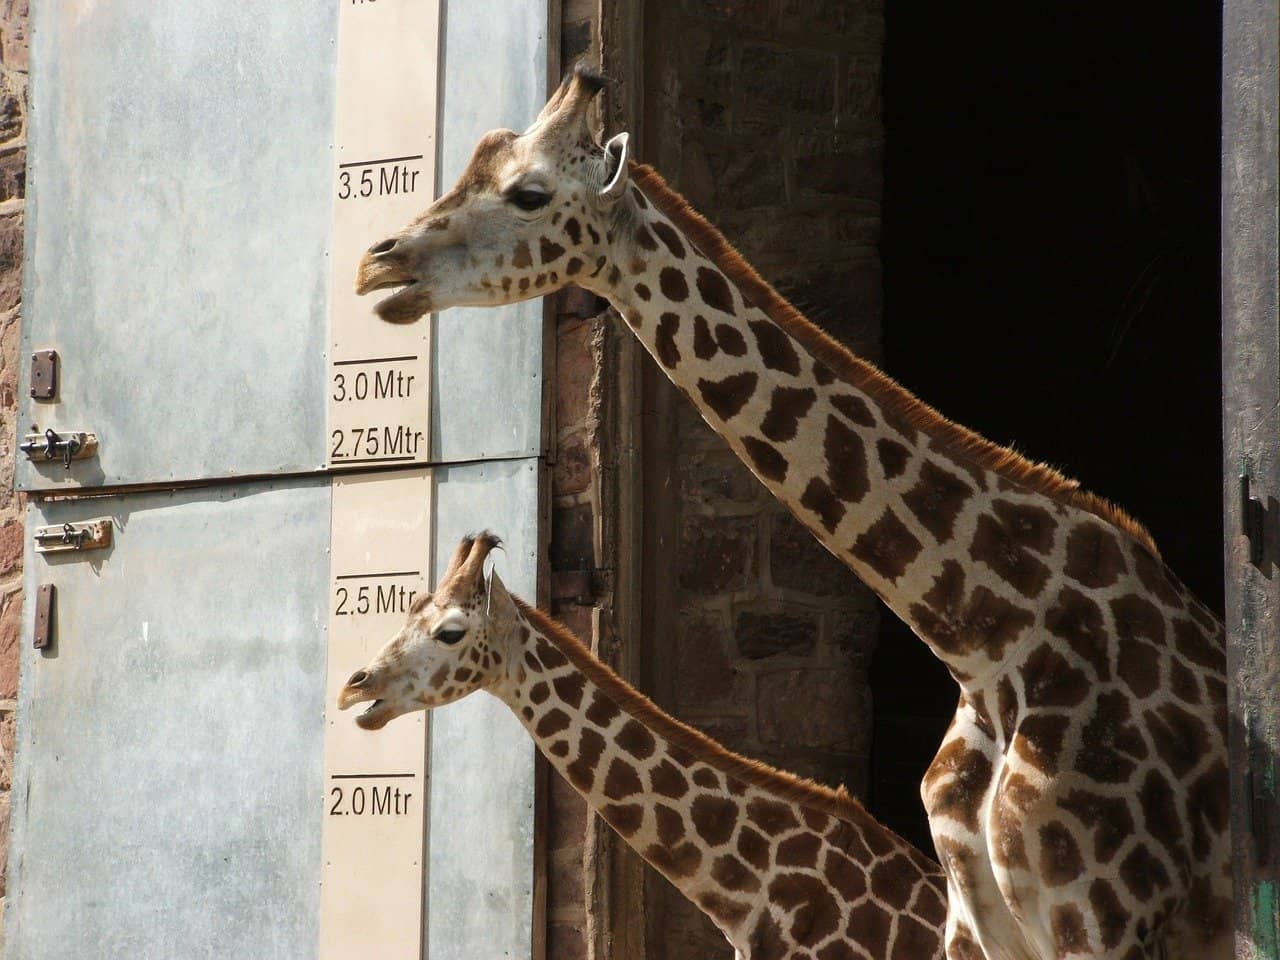 tall giraffe measuring